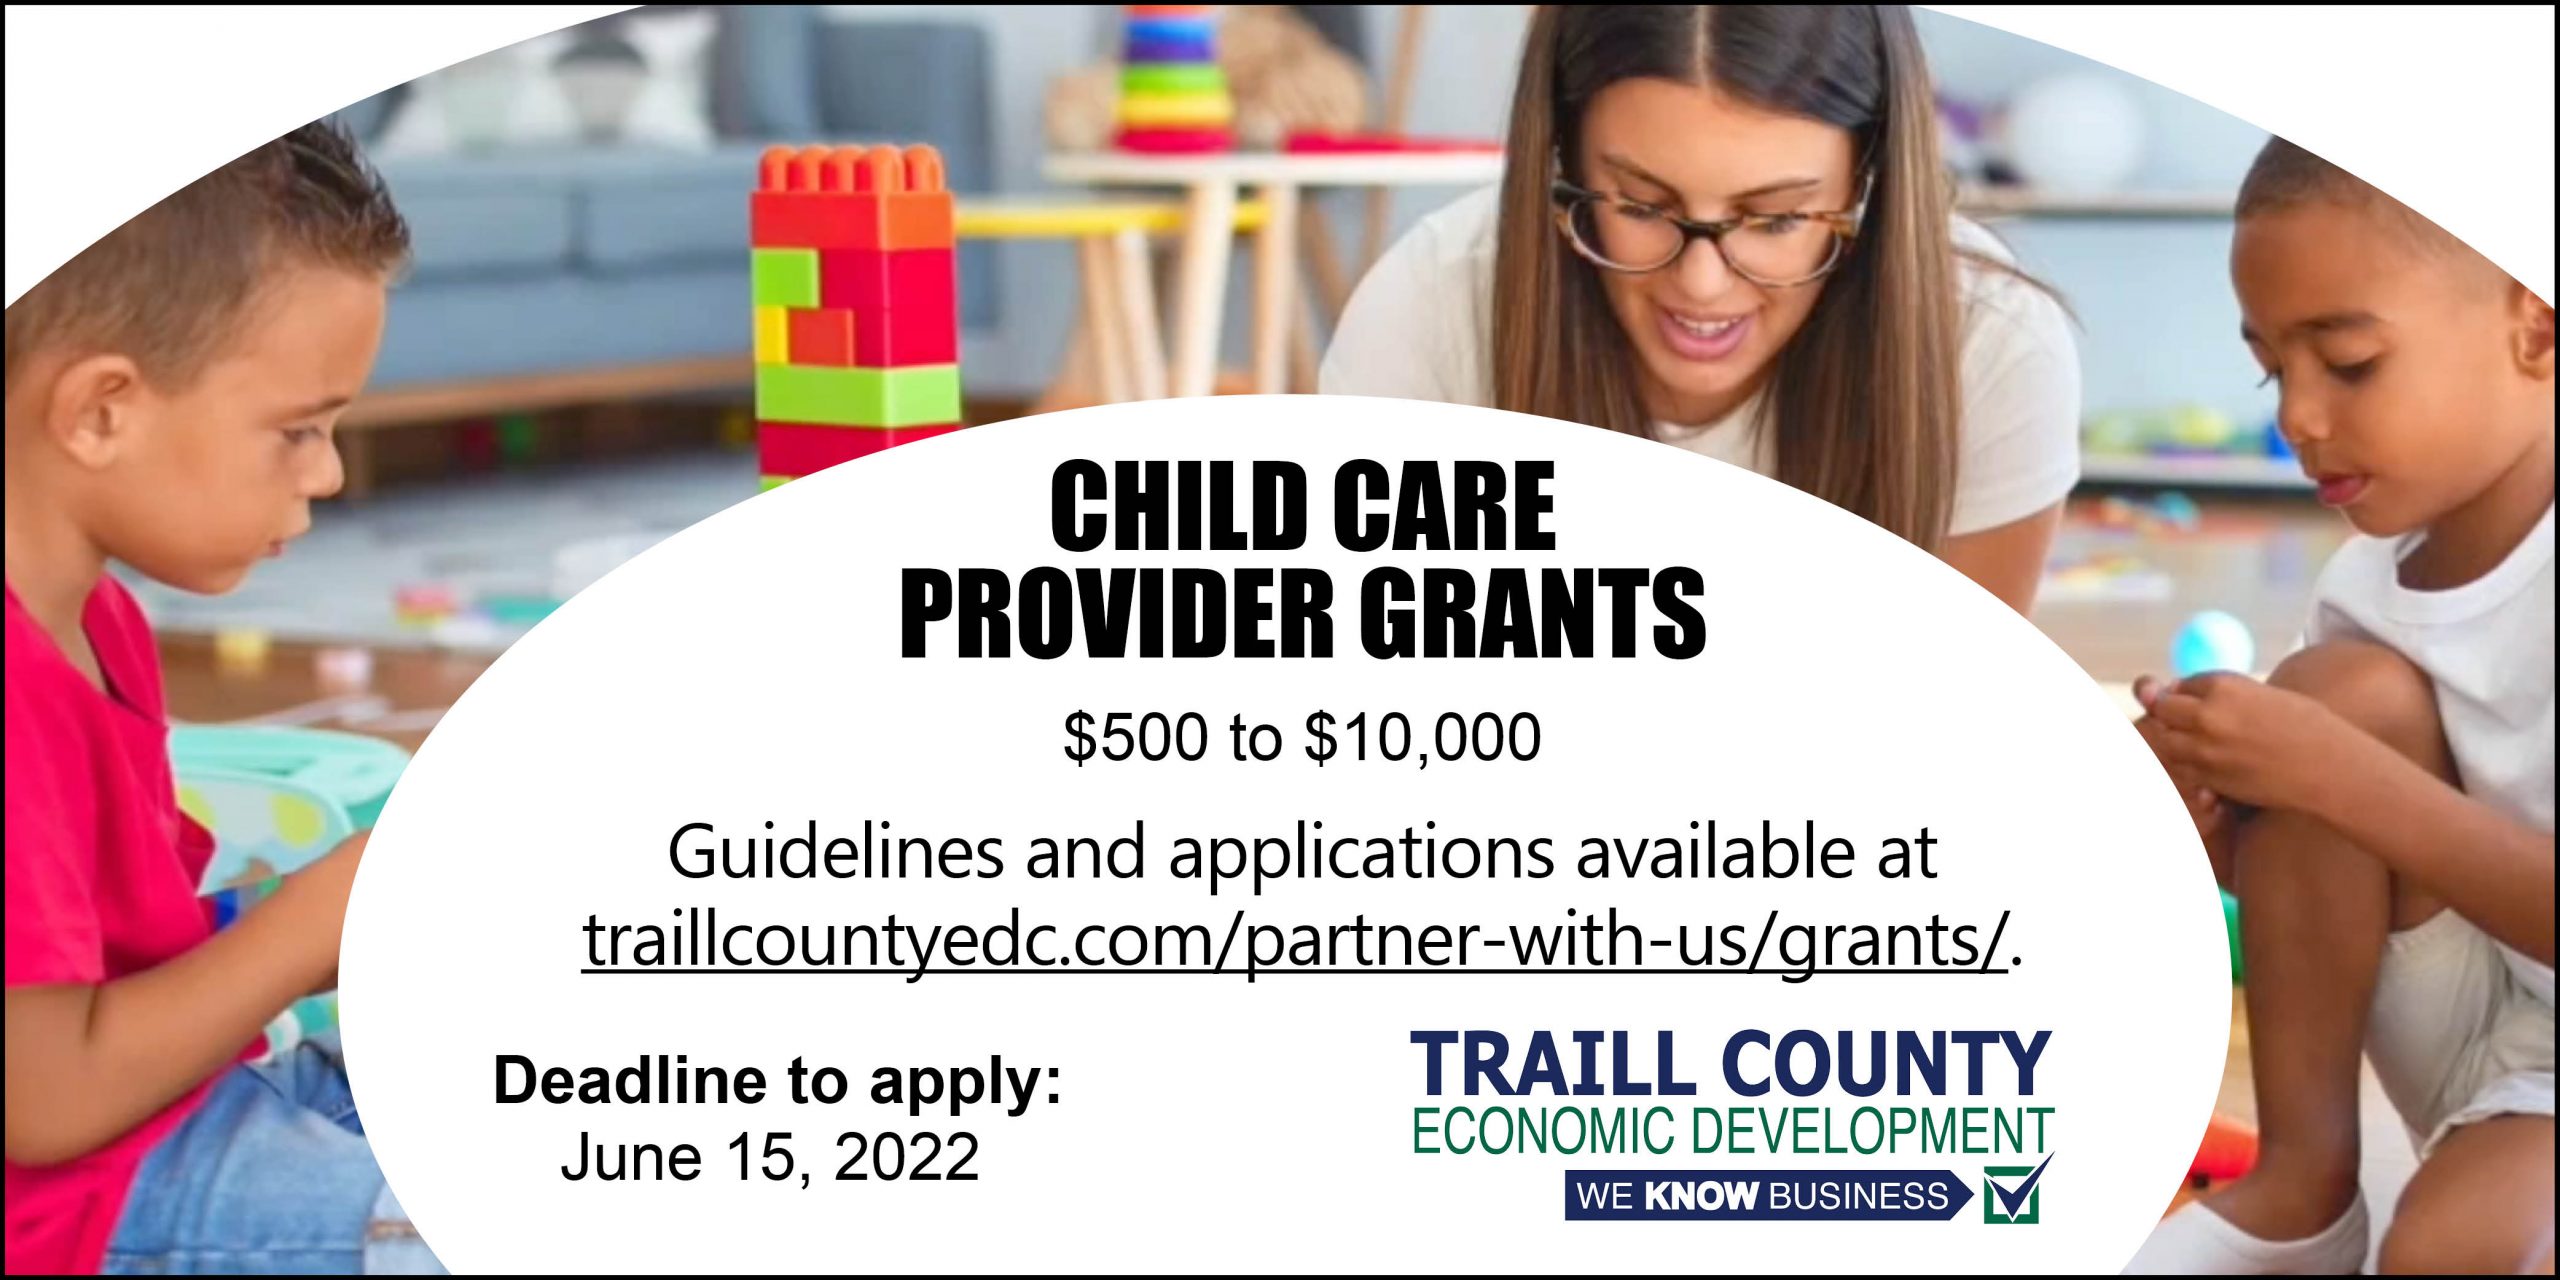 Child care grants